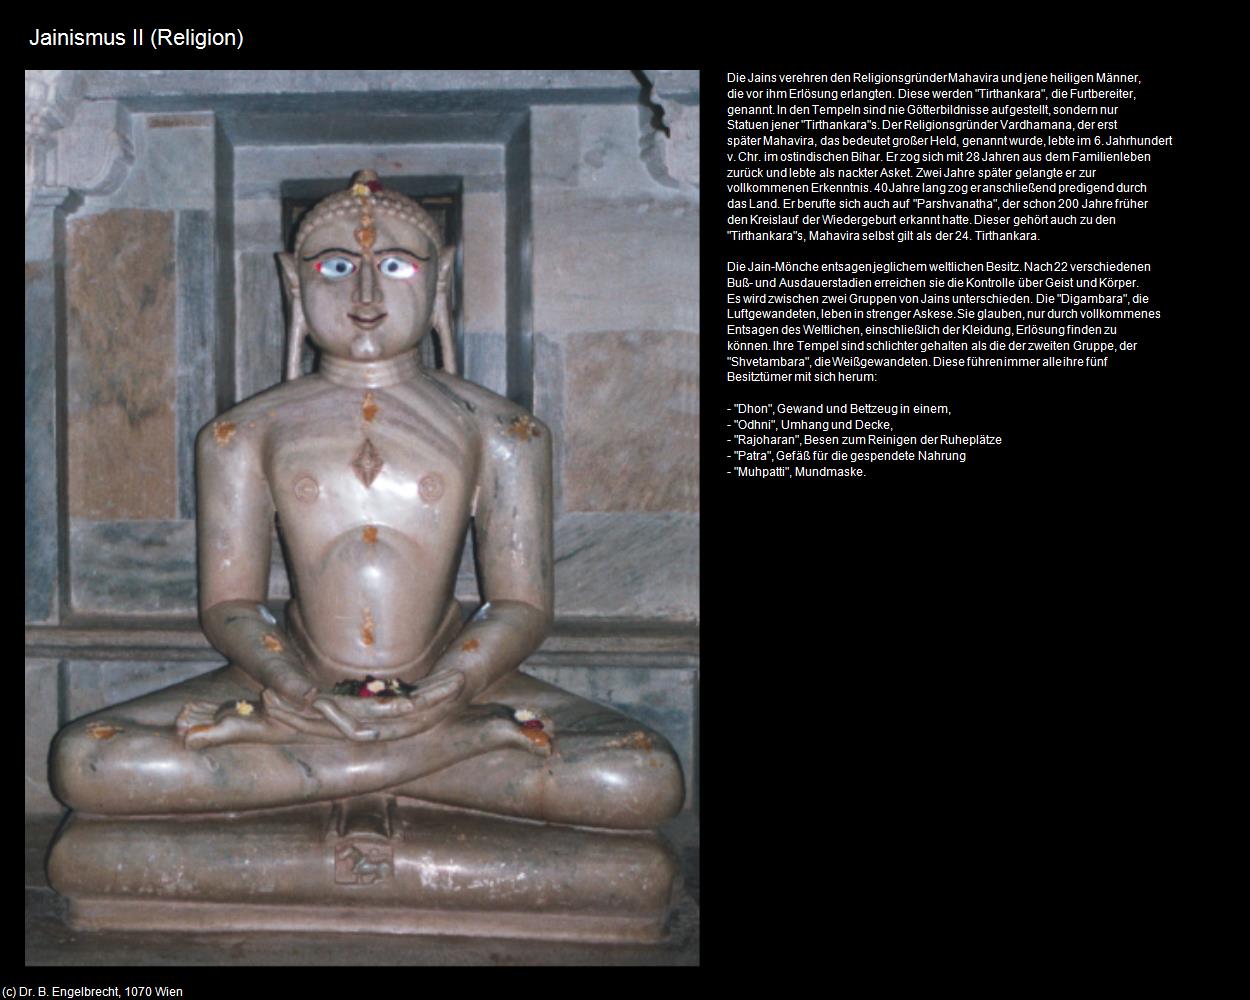 Jainismus II (Indien-Religion) in Rajasthan - das Land der Könige